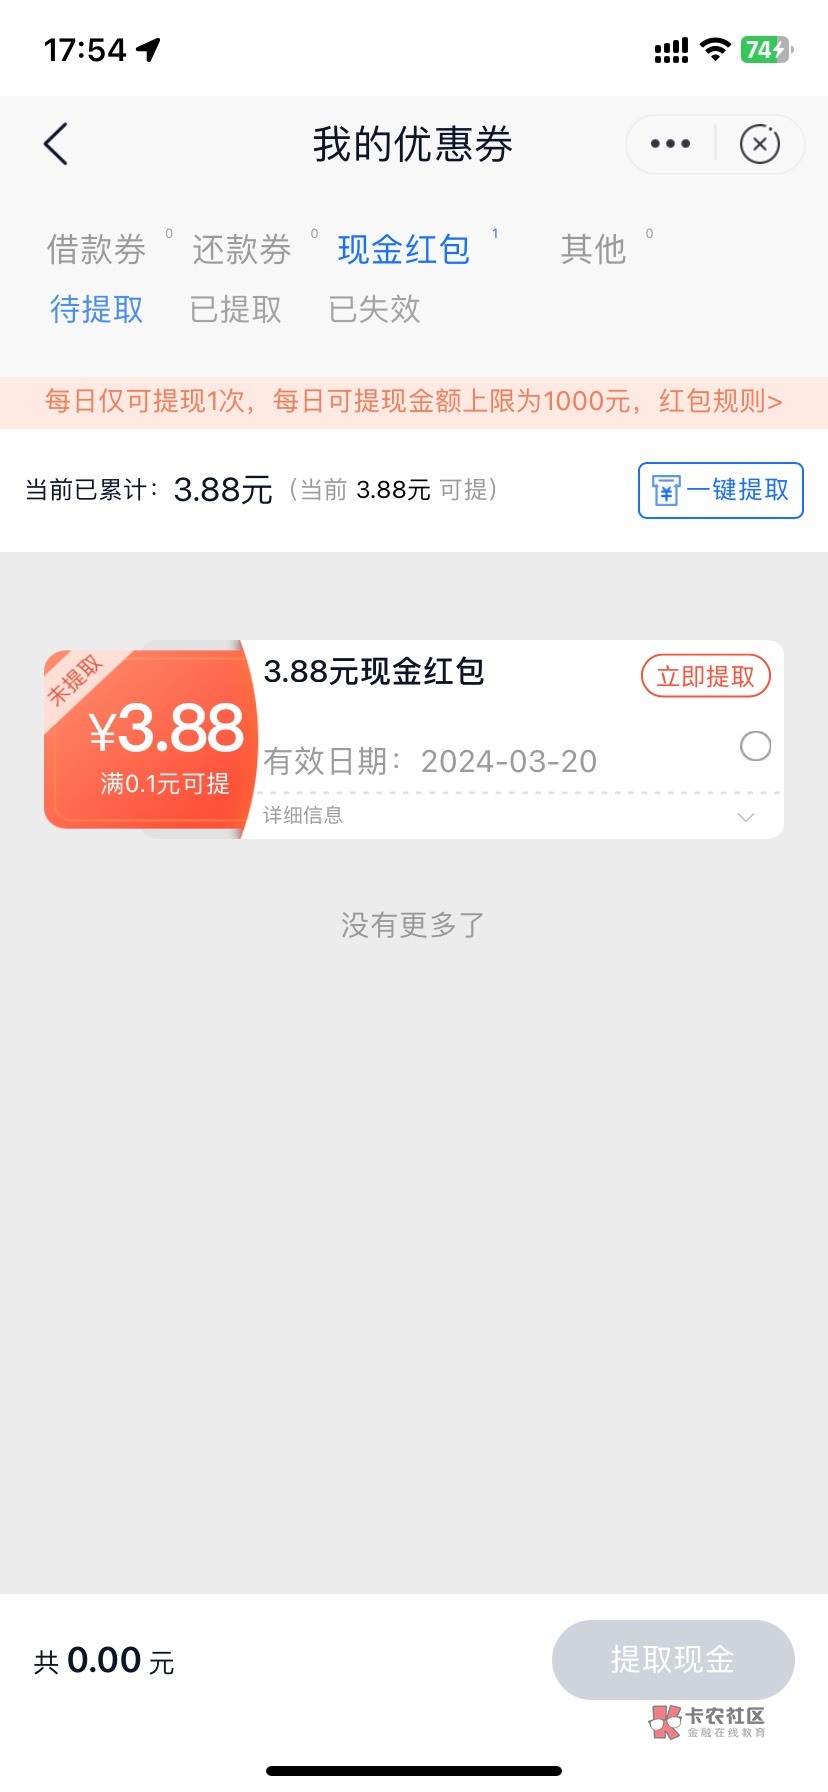 邮储-生活-本地服务-数字人民币--热门活动-左上角定位上海-全国下滑-申请抽88数币。邮64 / 作者:黑与白111 / 